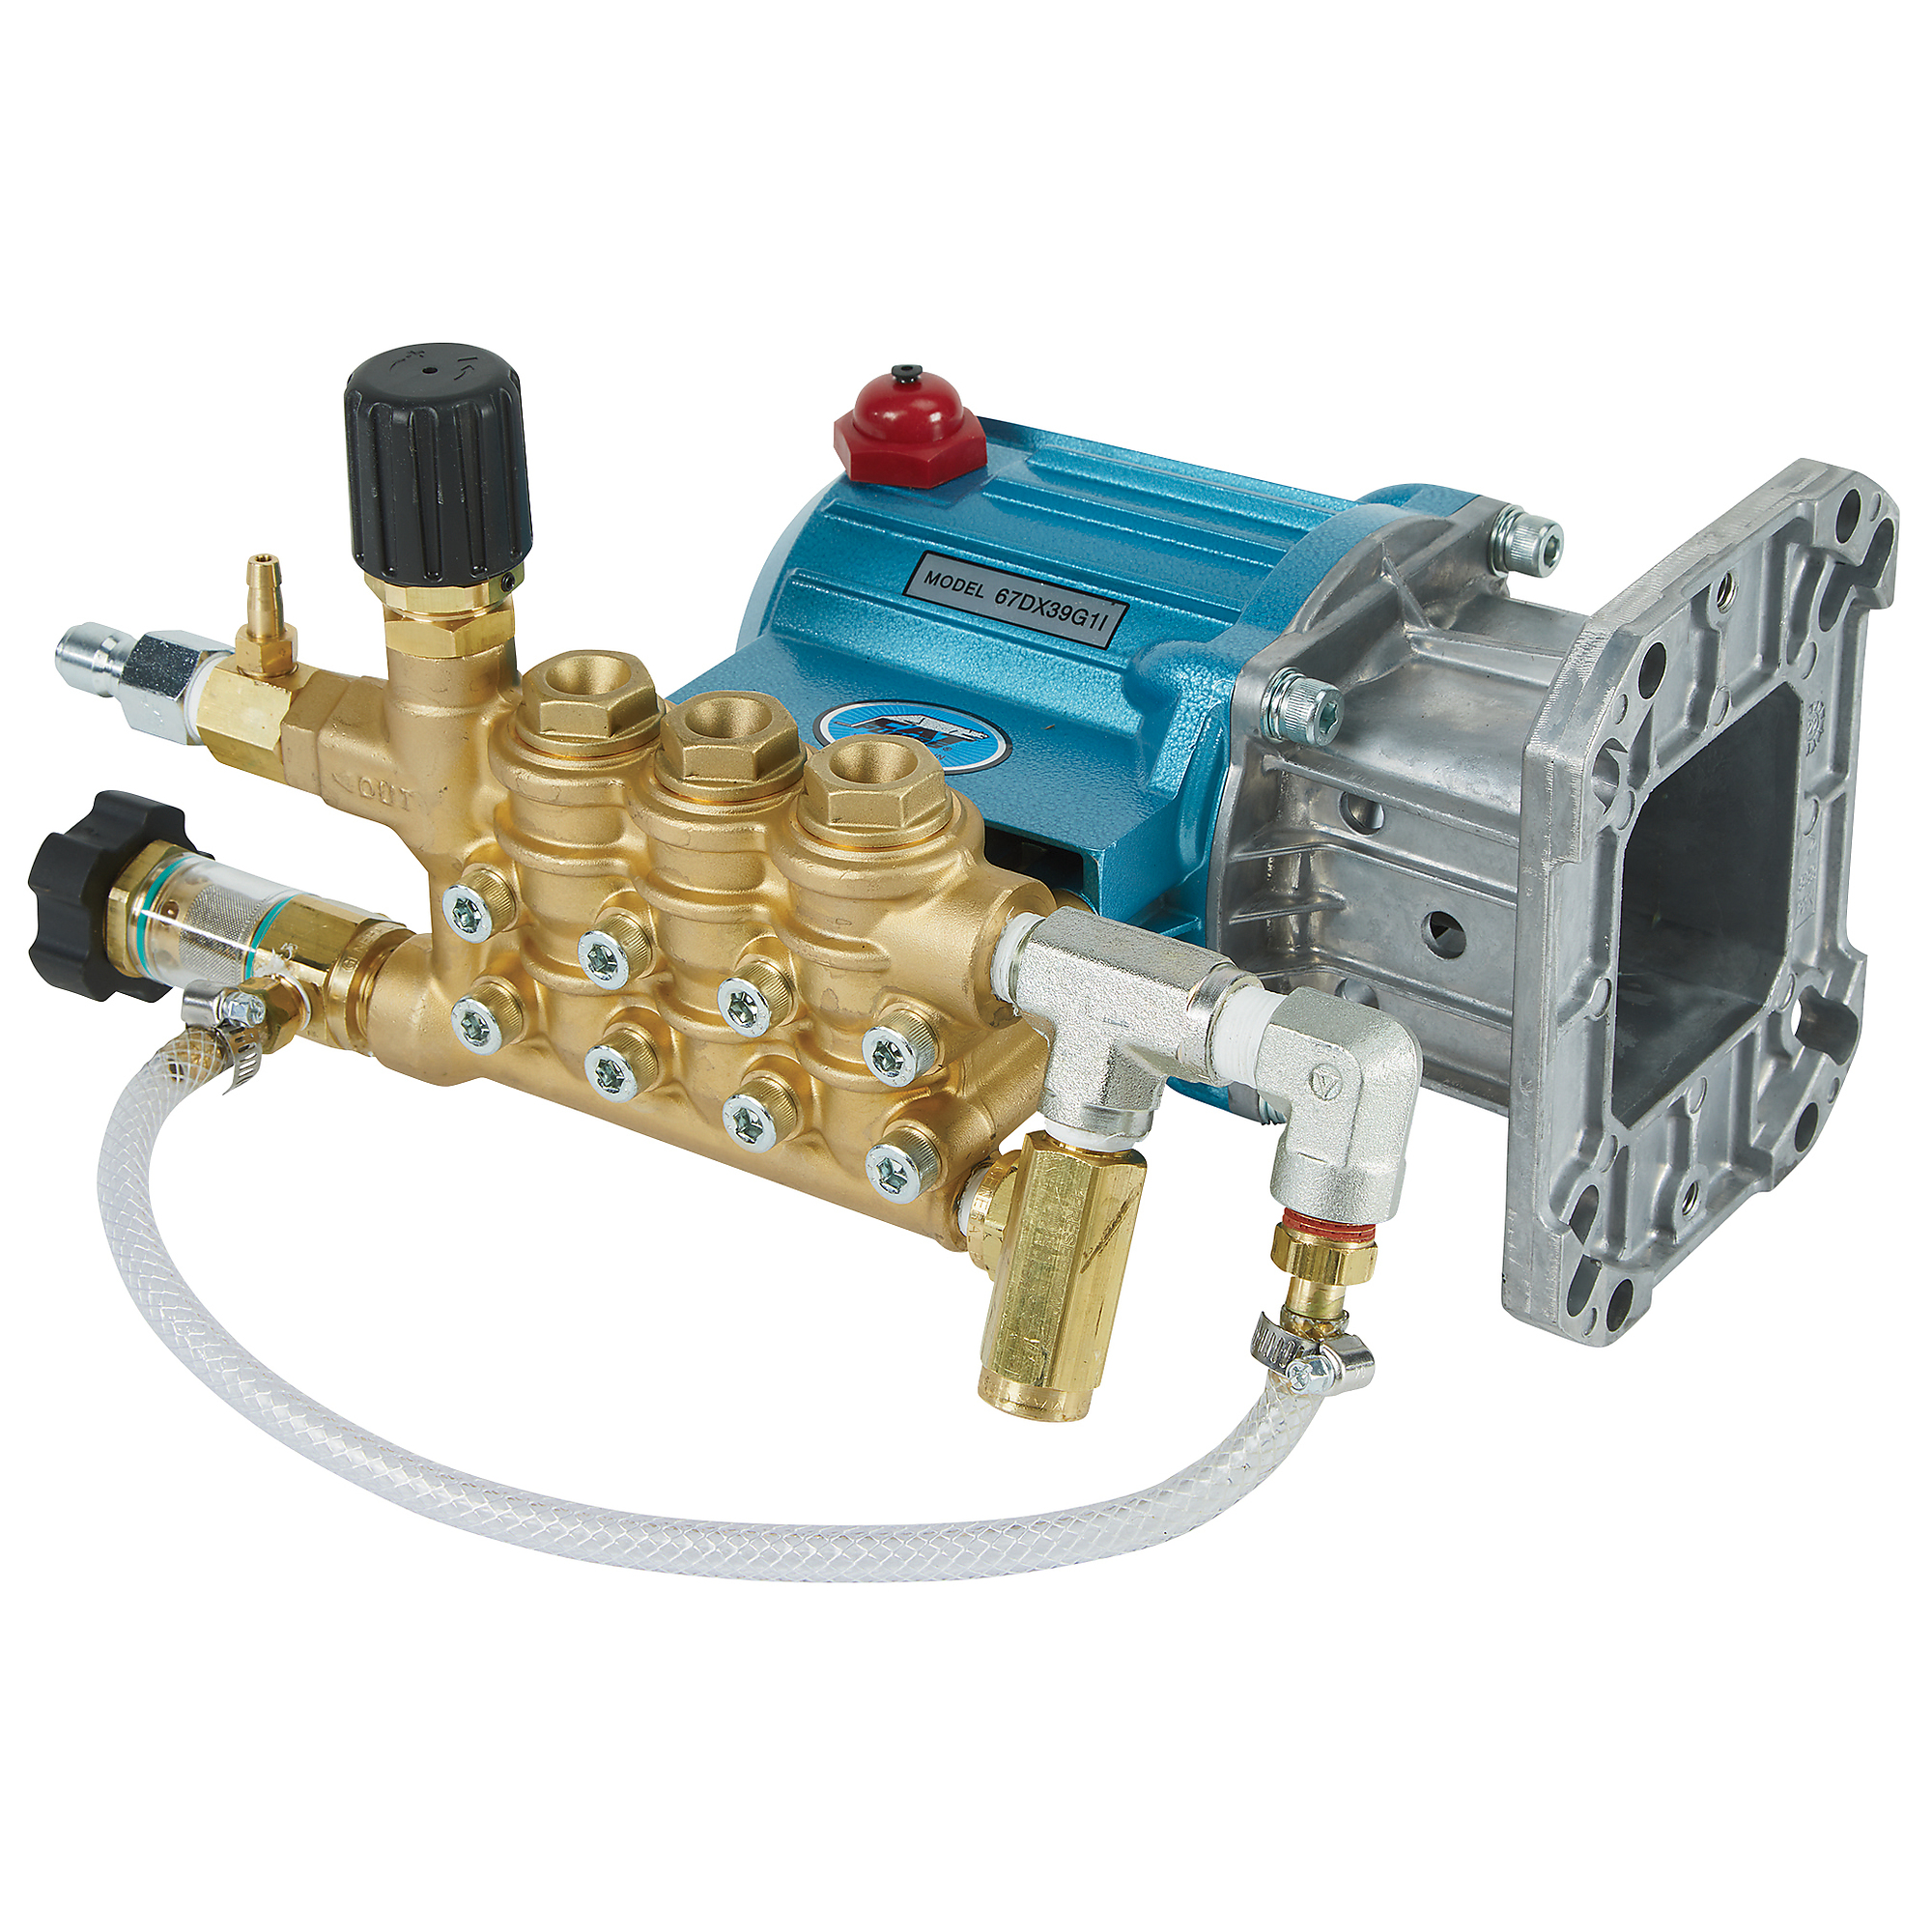 CAT Pumps Pressure Washer Pump, 4000 PSI, 3.5 GPM, Direct Drive, Gas